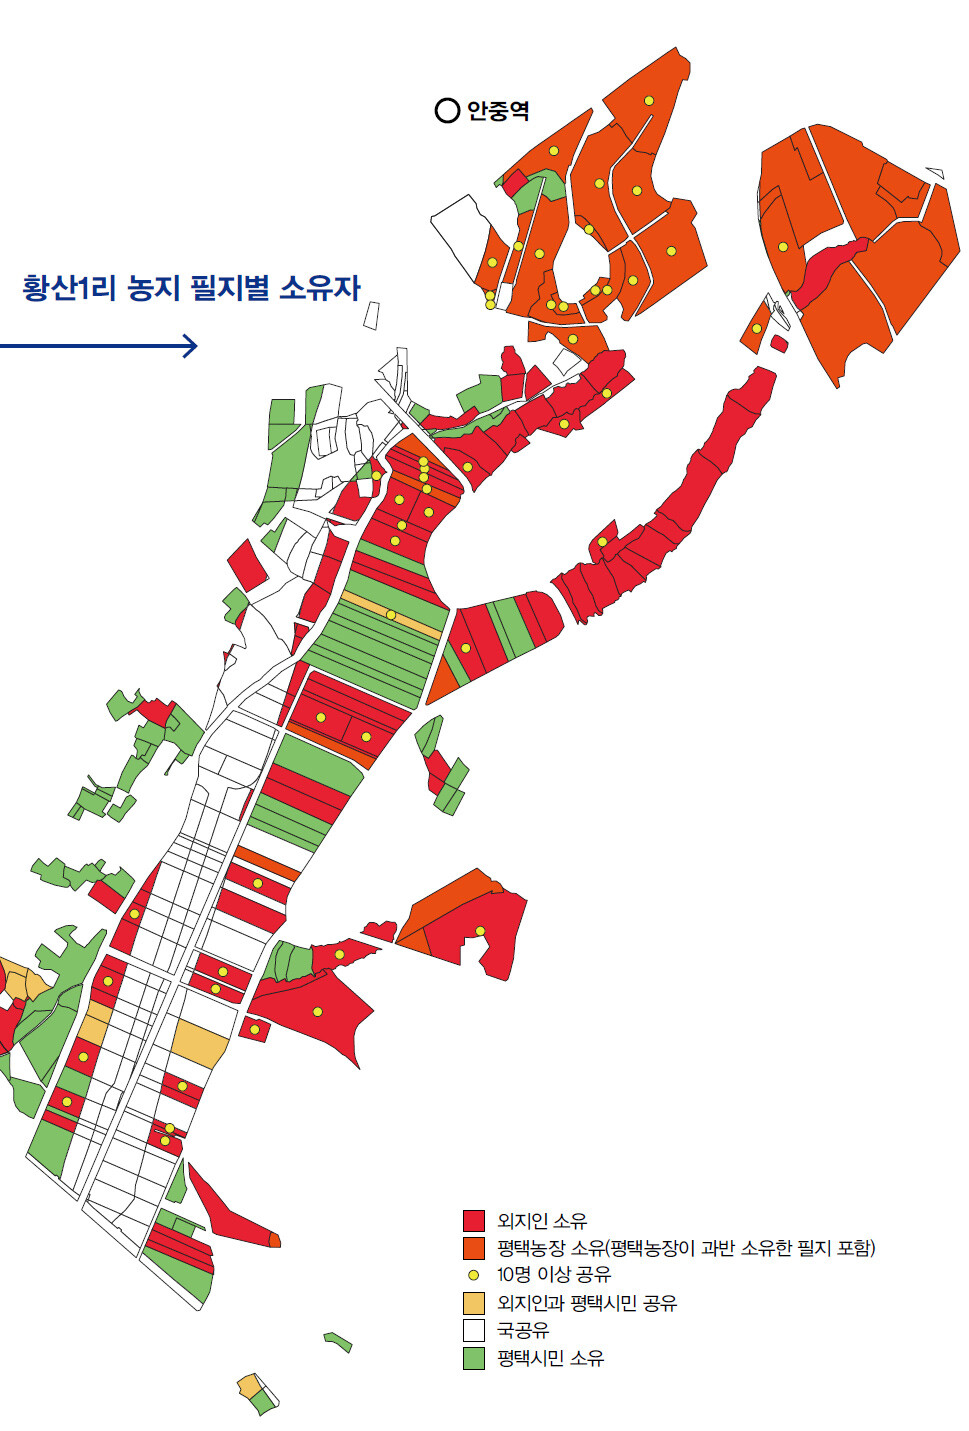 황산1리는 남북으로 길게 생겼다. 안중역과 가까운 북쪽에 외지인 땅이 많고 기획부동산도 주로 이곳에서 활동했다. 평택농장은 소유자가 대를 이어 서울 강남구에 살고 있다. 평택농장 땅도 사실상 외지인 땅으로 볼 수 있다. 황산1리에서 외지인 소유 농지는 필지를 기준으로 59.7%, 면적을 기준으로 67.6%다.